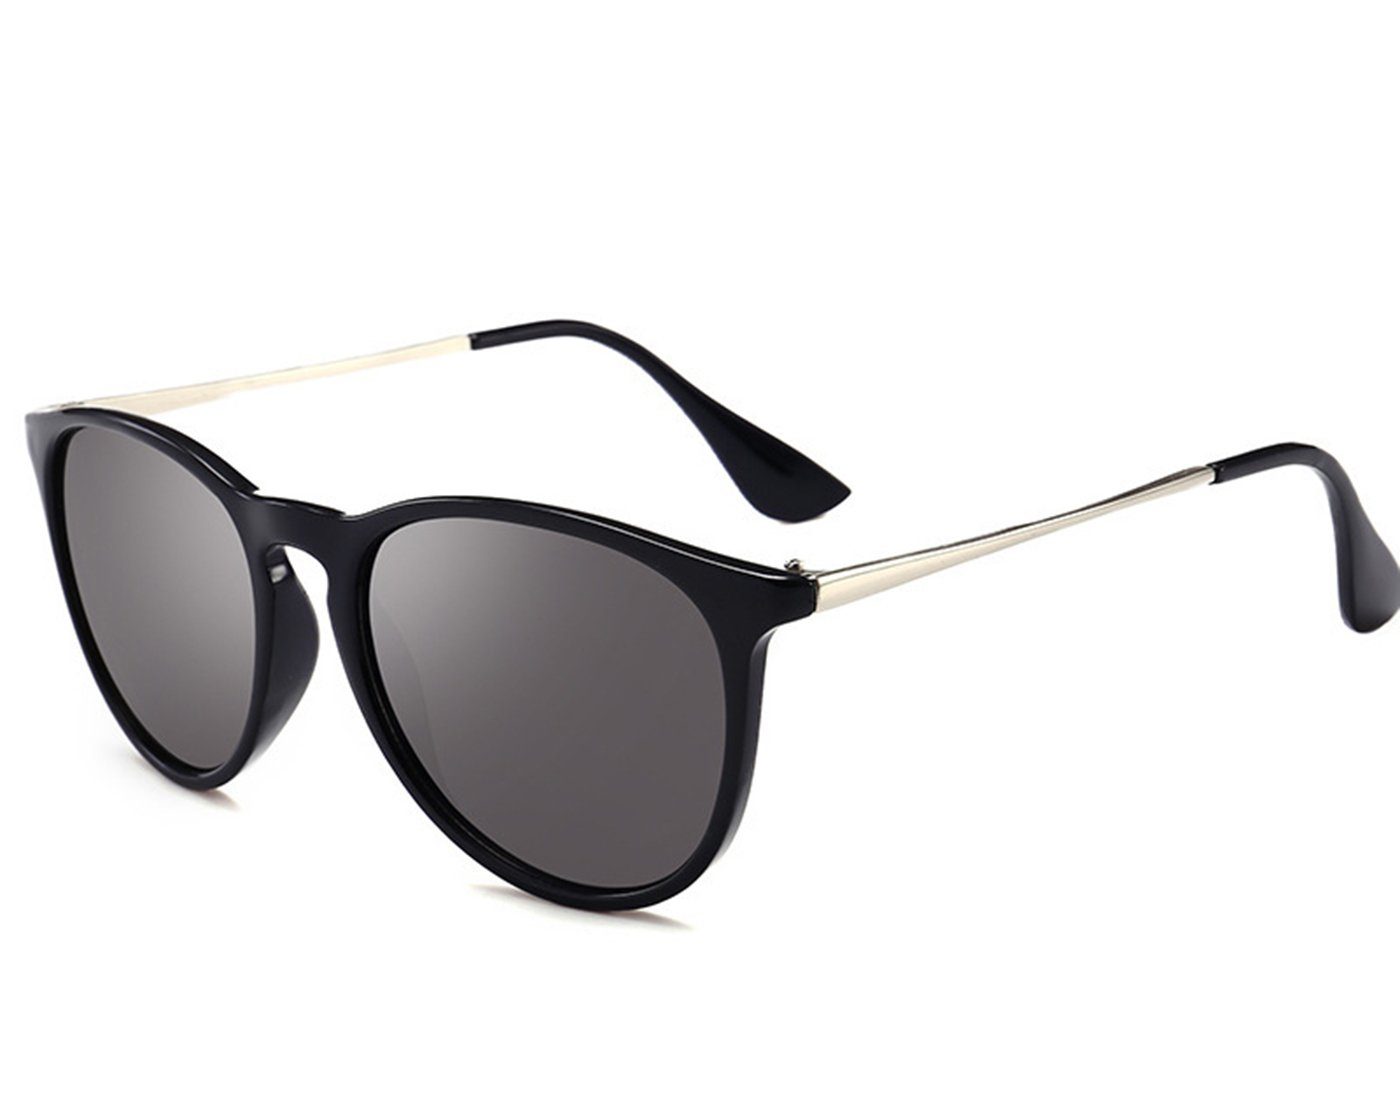 Haiaveng Sonnenbrille Vintage Runde Sonnenbrille Unisex Modische Retro-Brille,Brille mit UV400-Schutz black | Sonnenbrillen